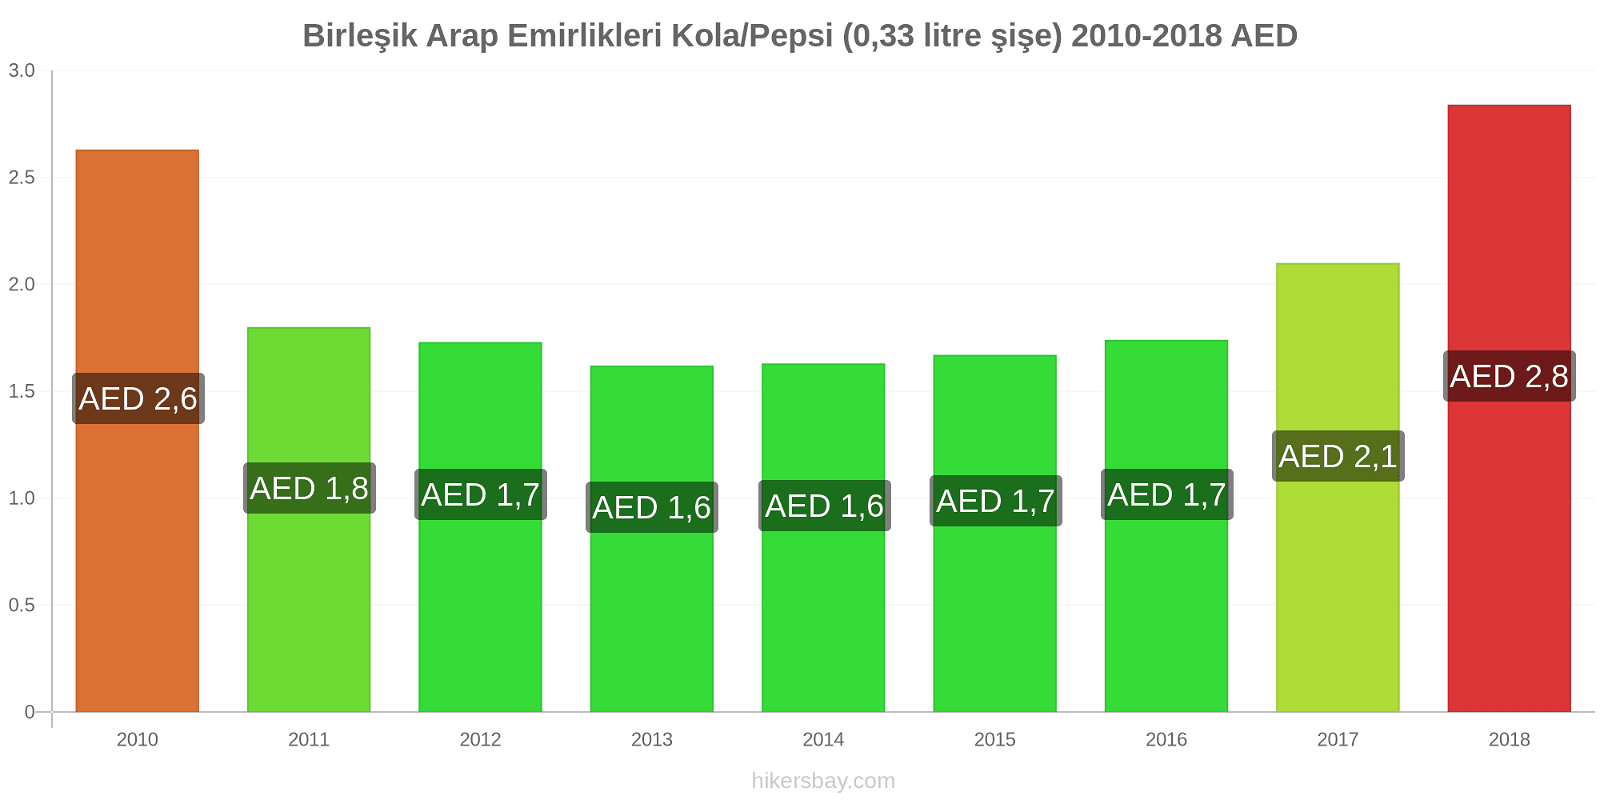 Birleşik Arap Emirlikleri fiyat değişiklikleri Kola/Pepsi (0.33 litre şişe) hikersbay.com